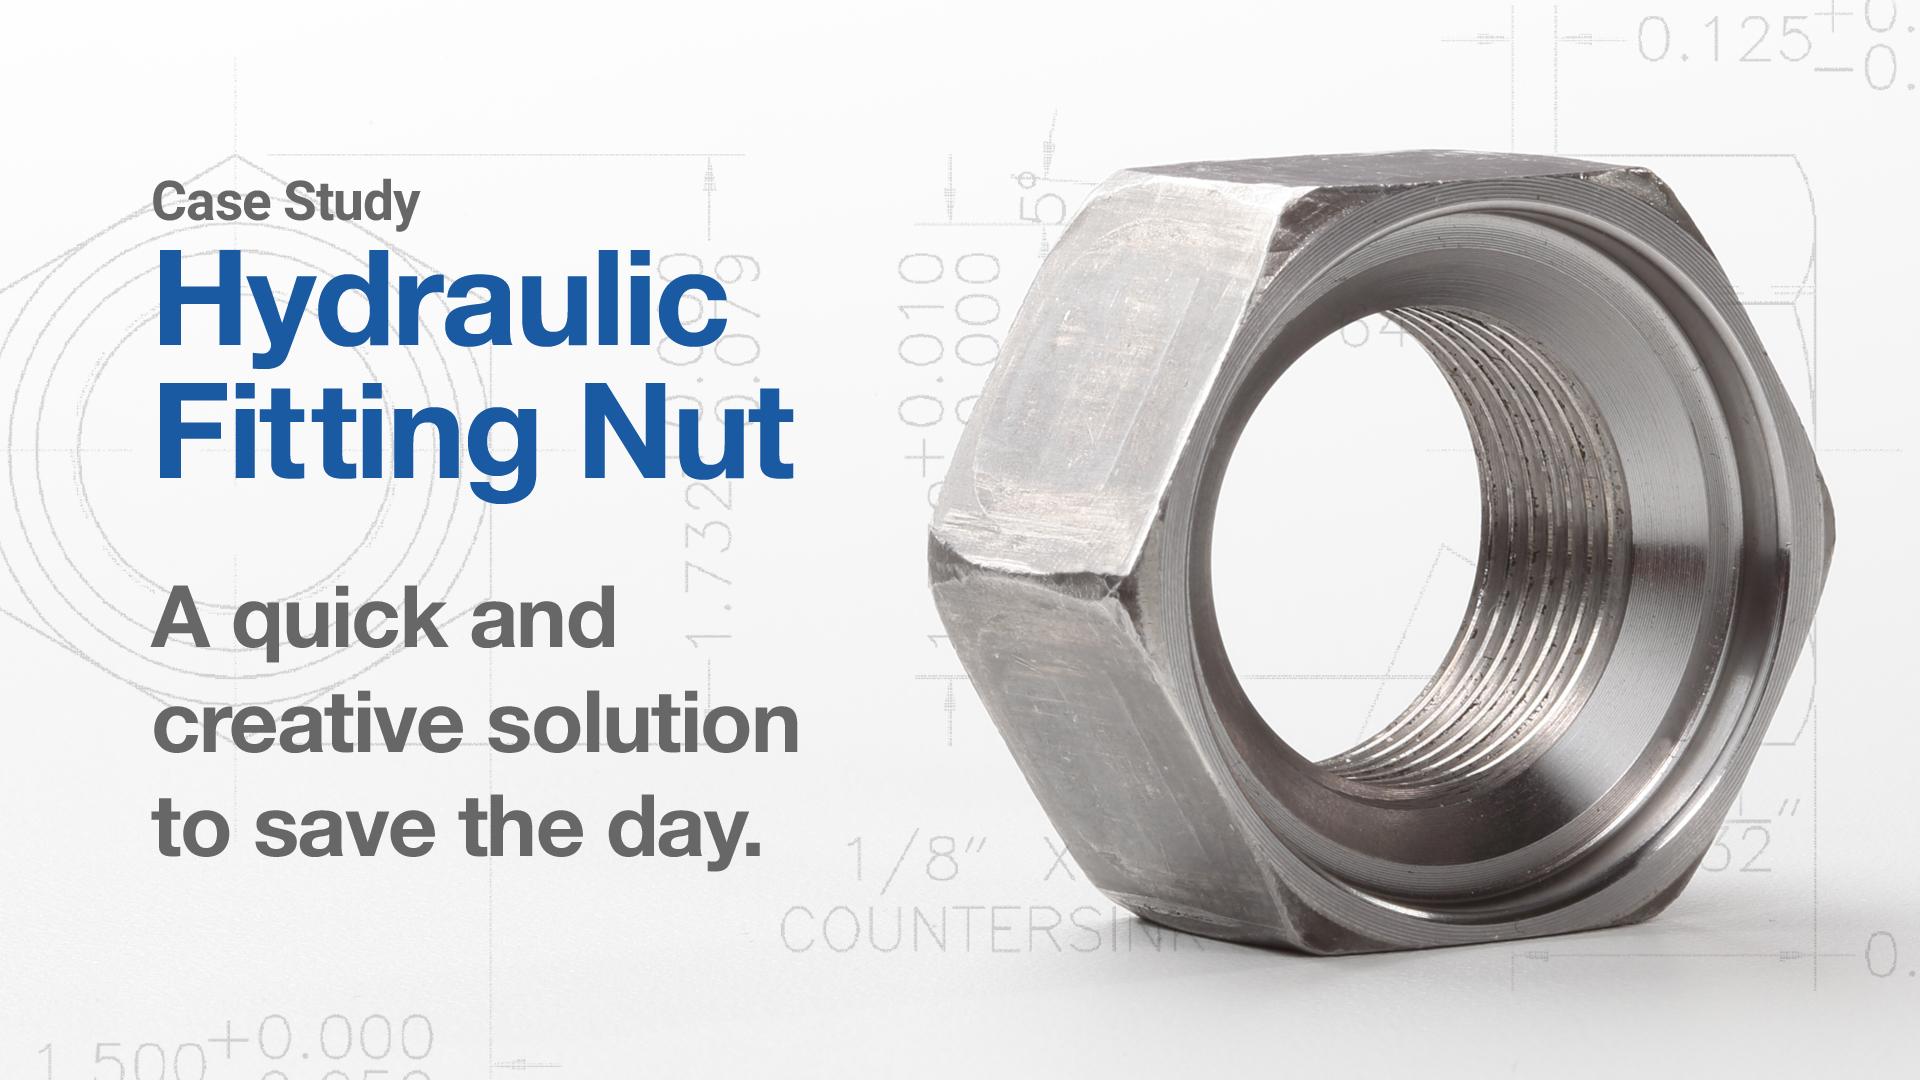 Case Study: Hydraulic Fitting Nut